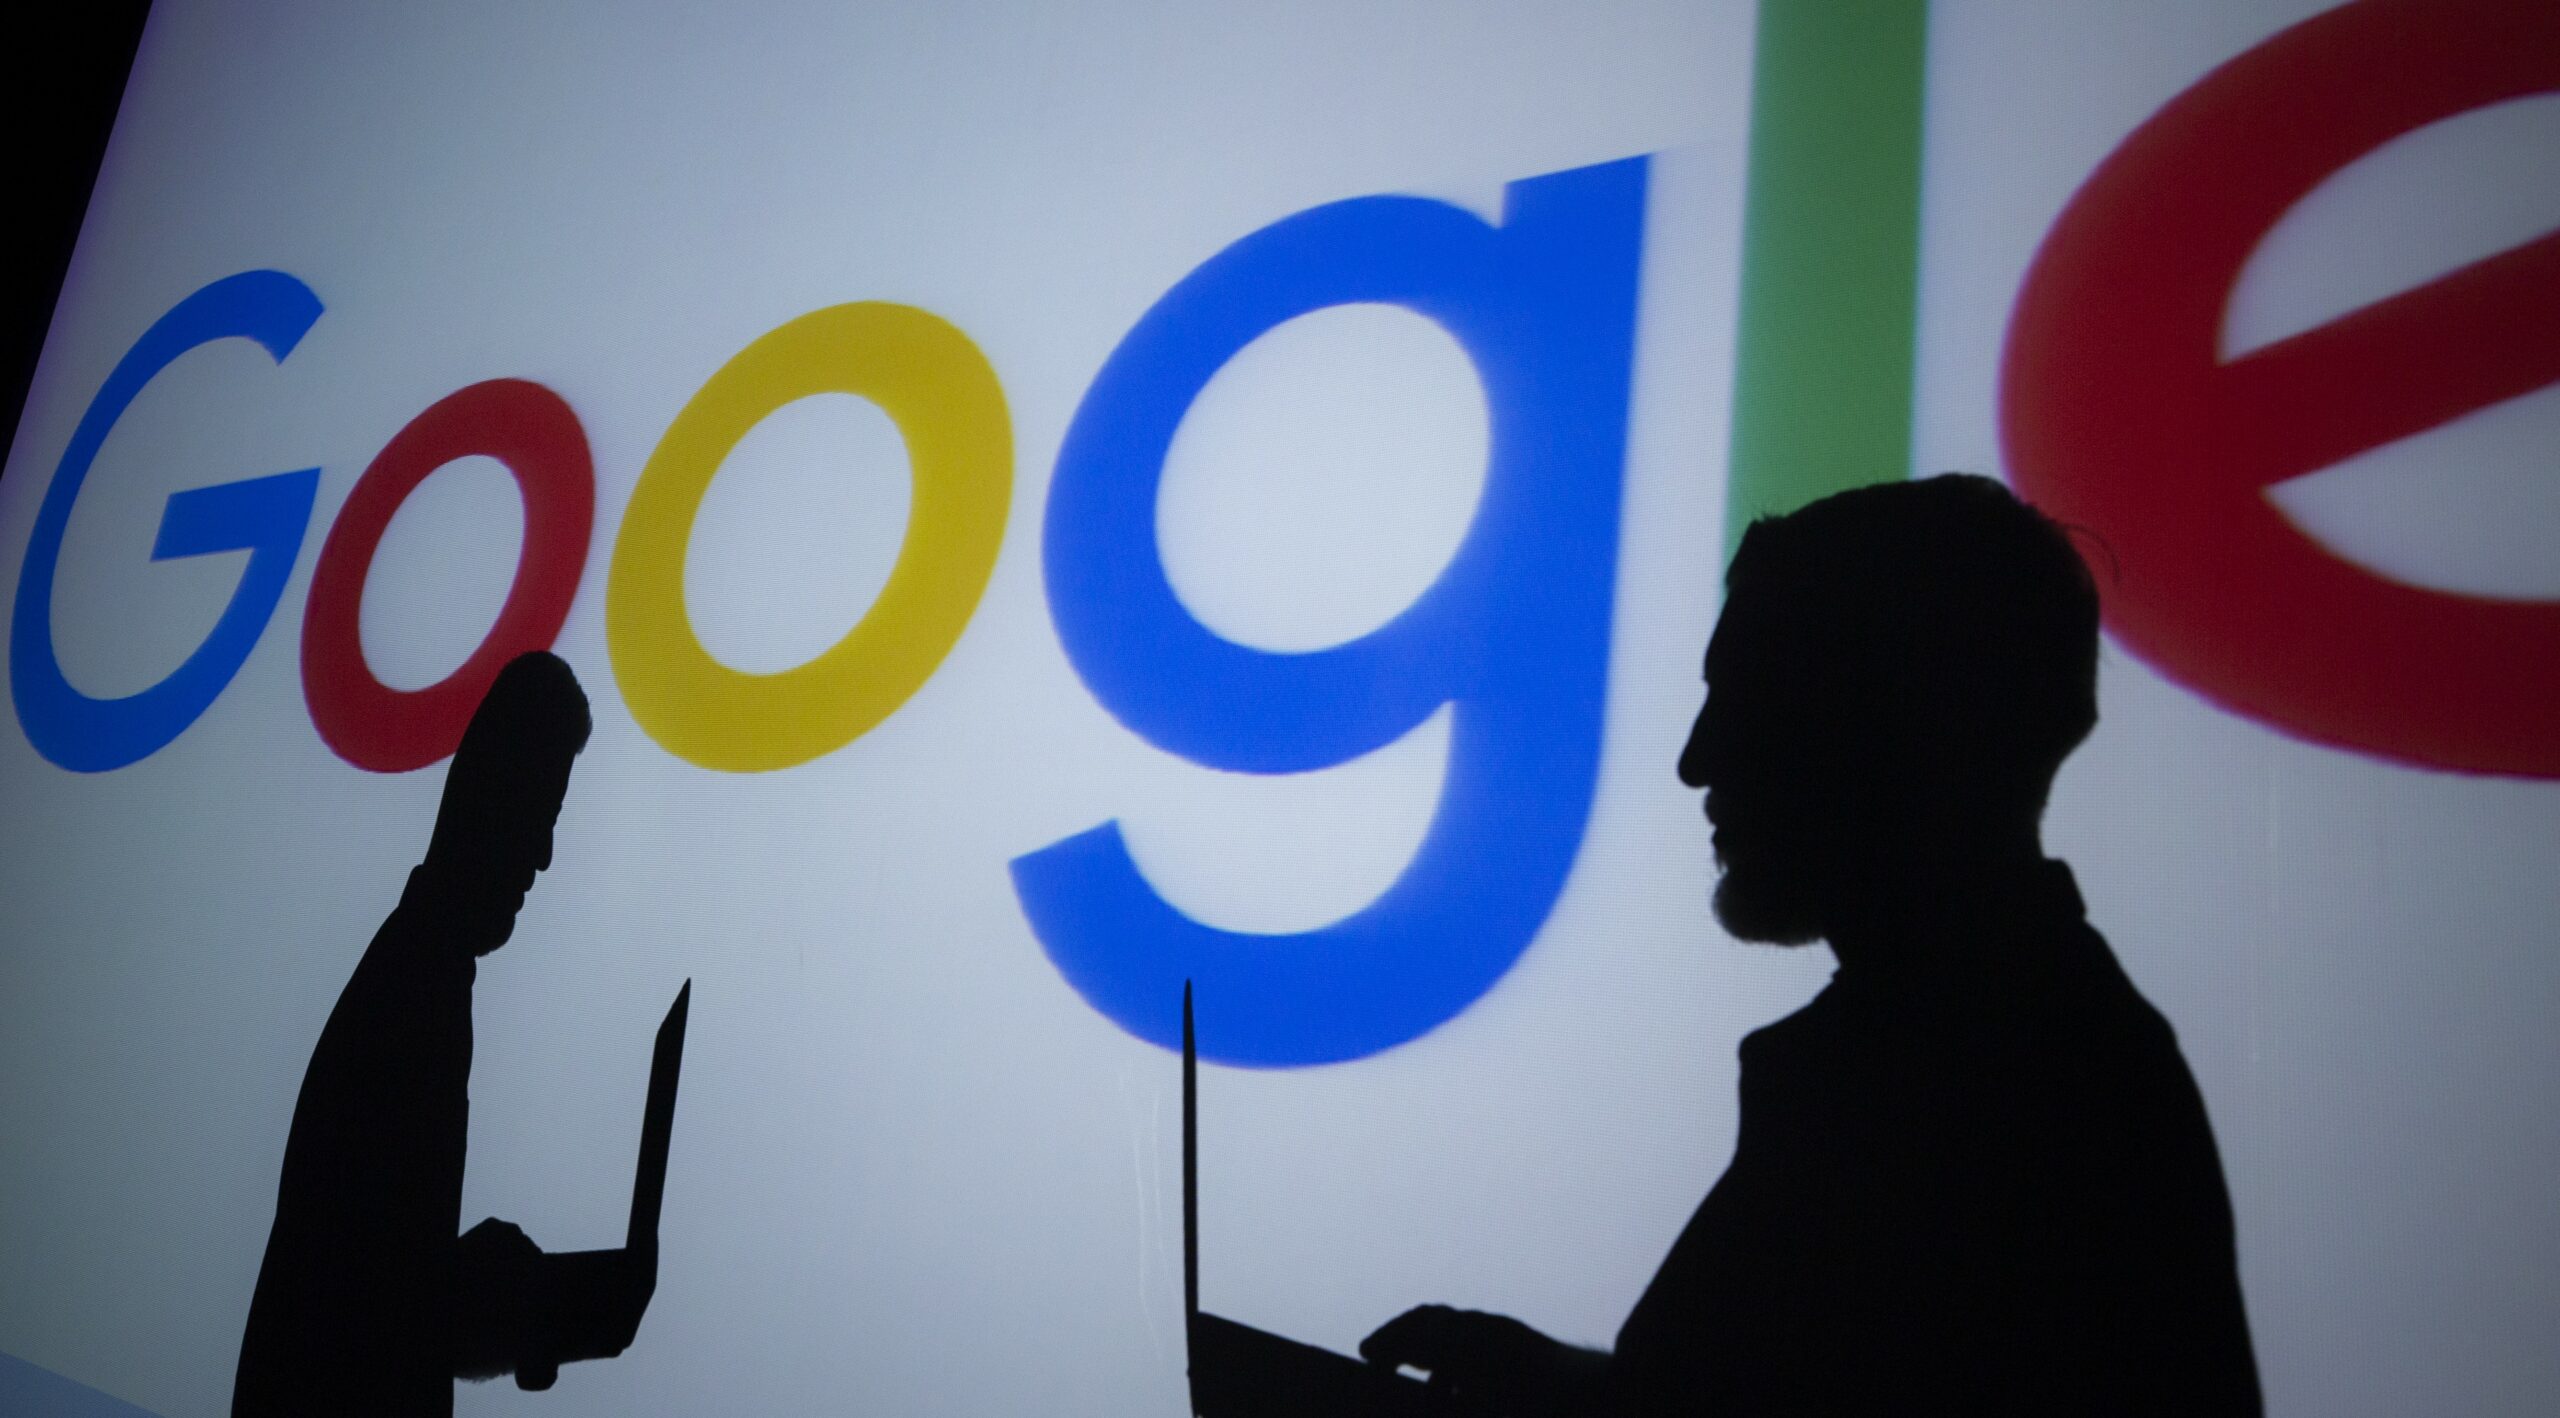 Google Axes 12,000 Jobs As Big Tech Layoffs Continue